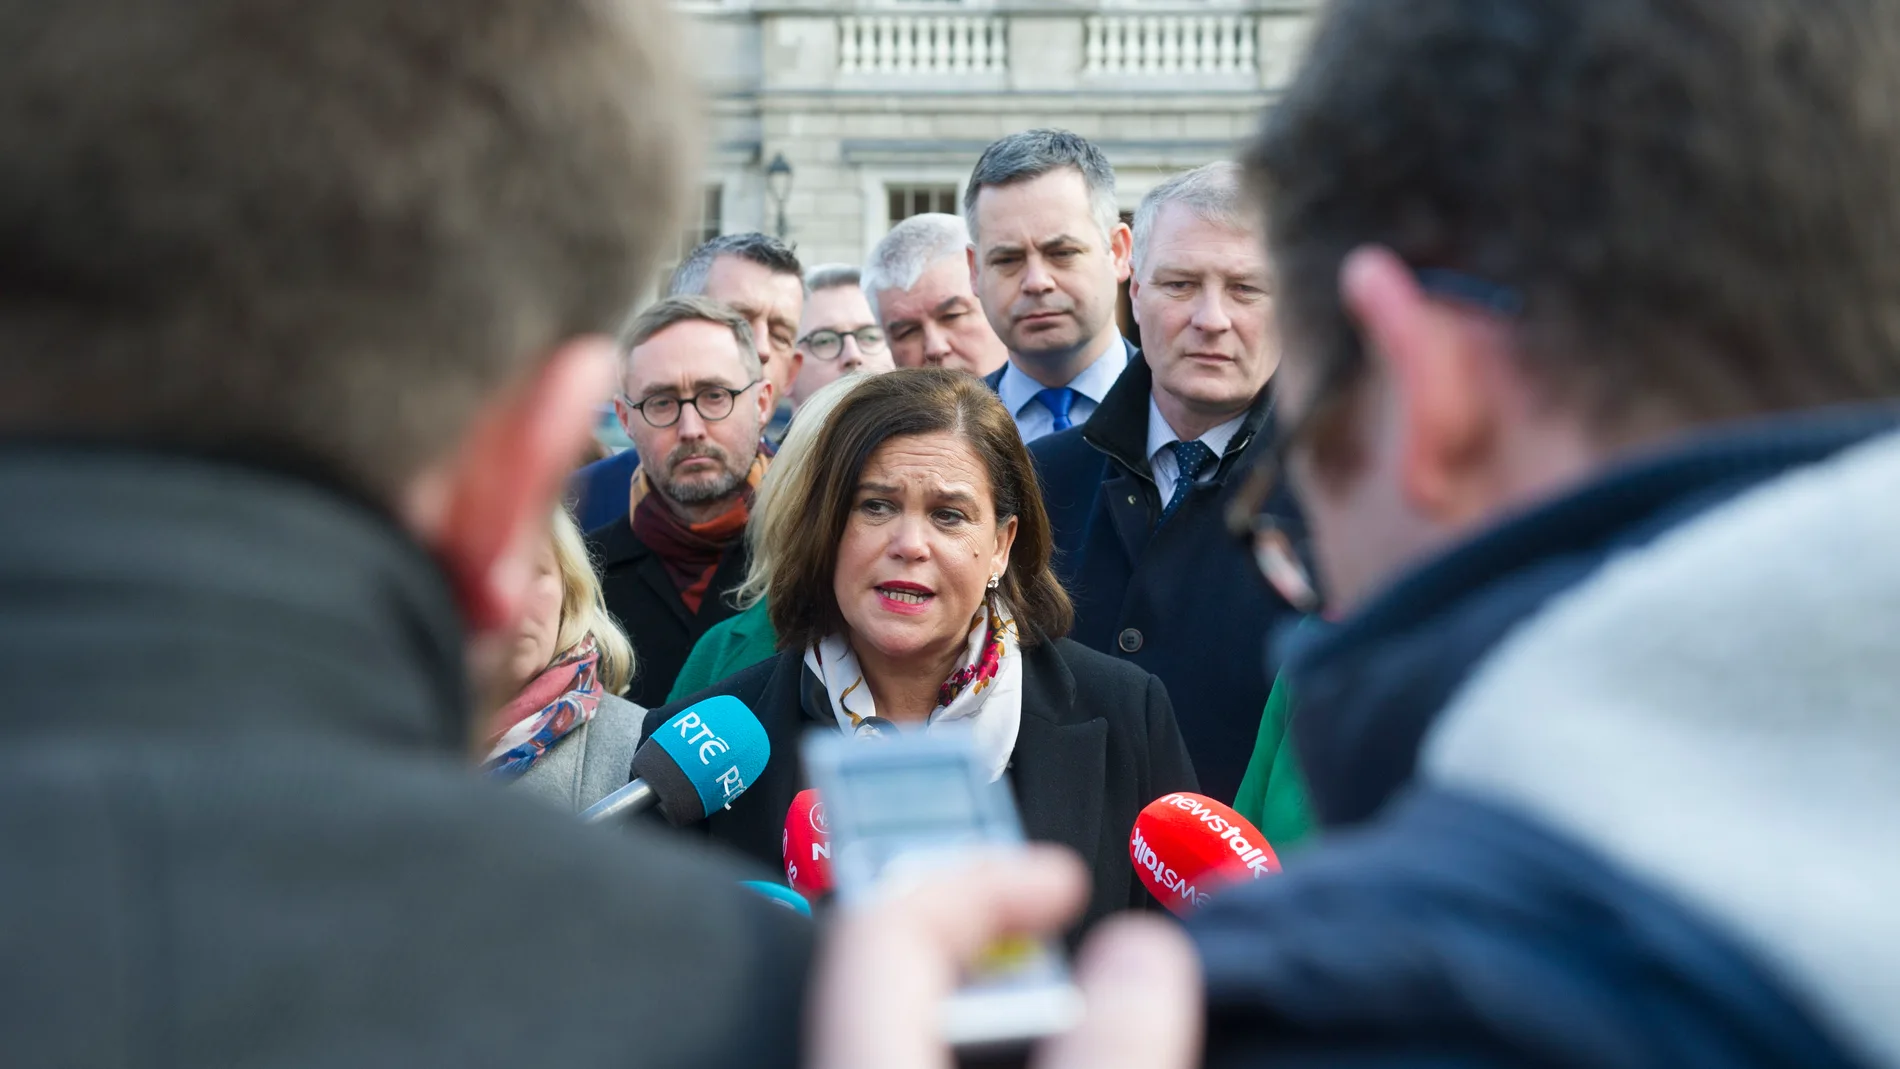 Sinn Fein meeting in Dublin